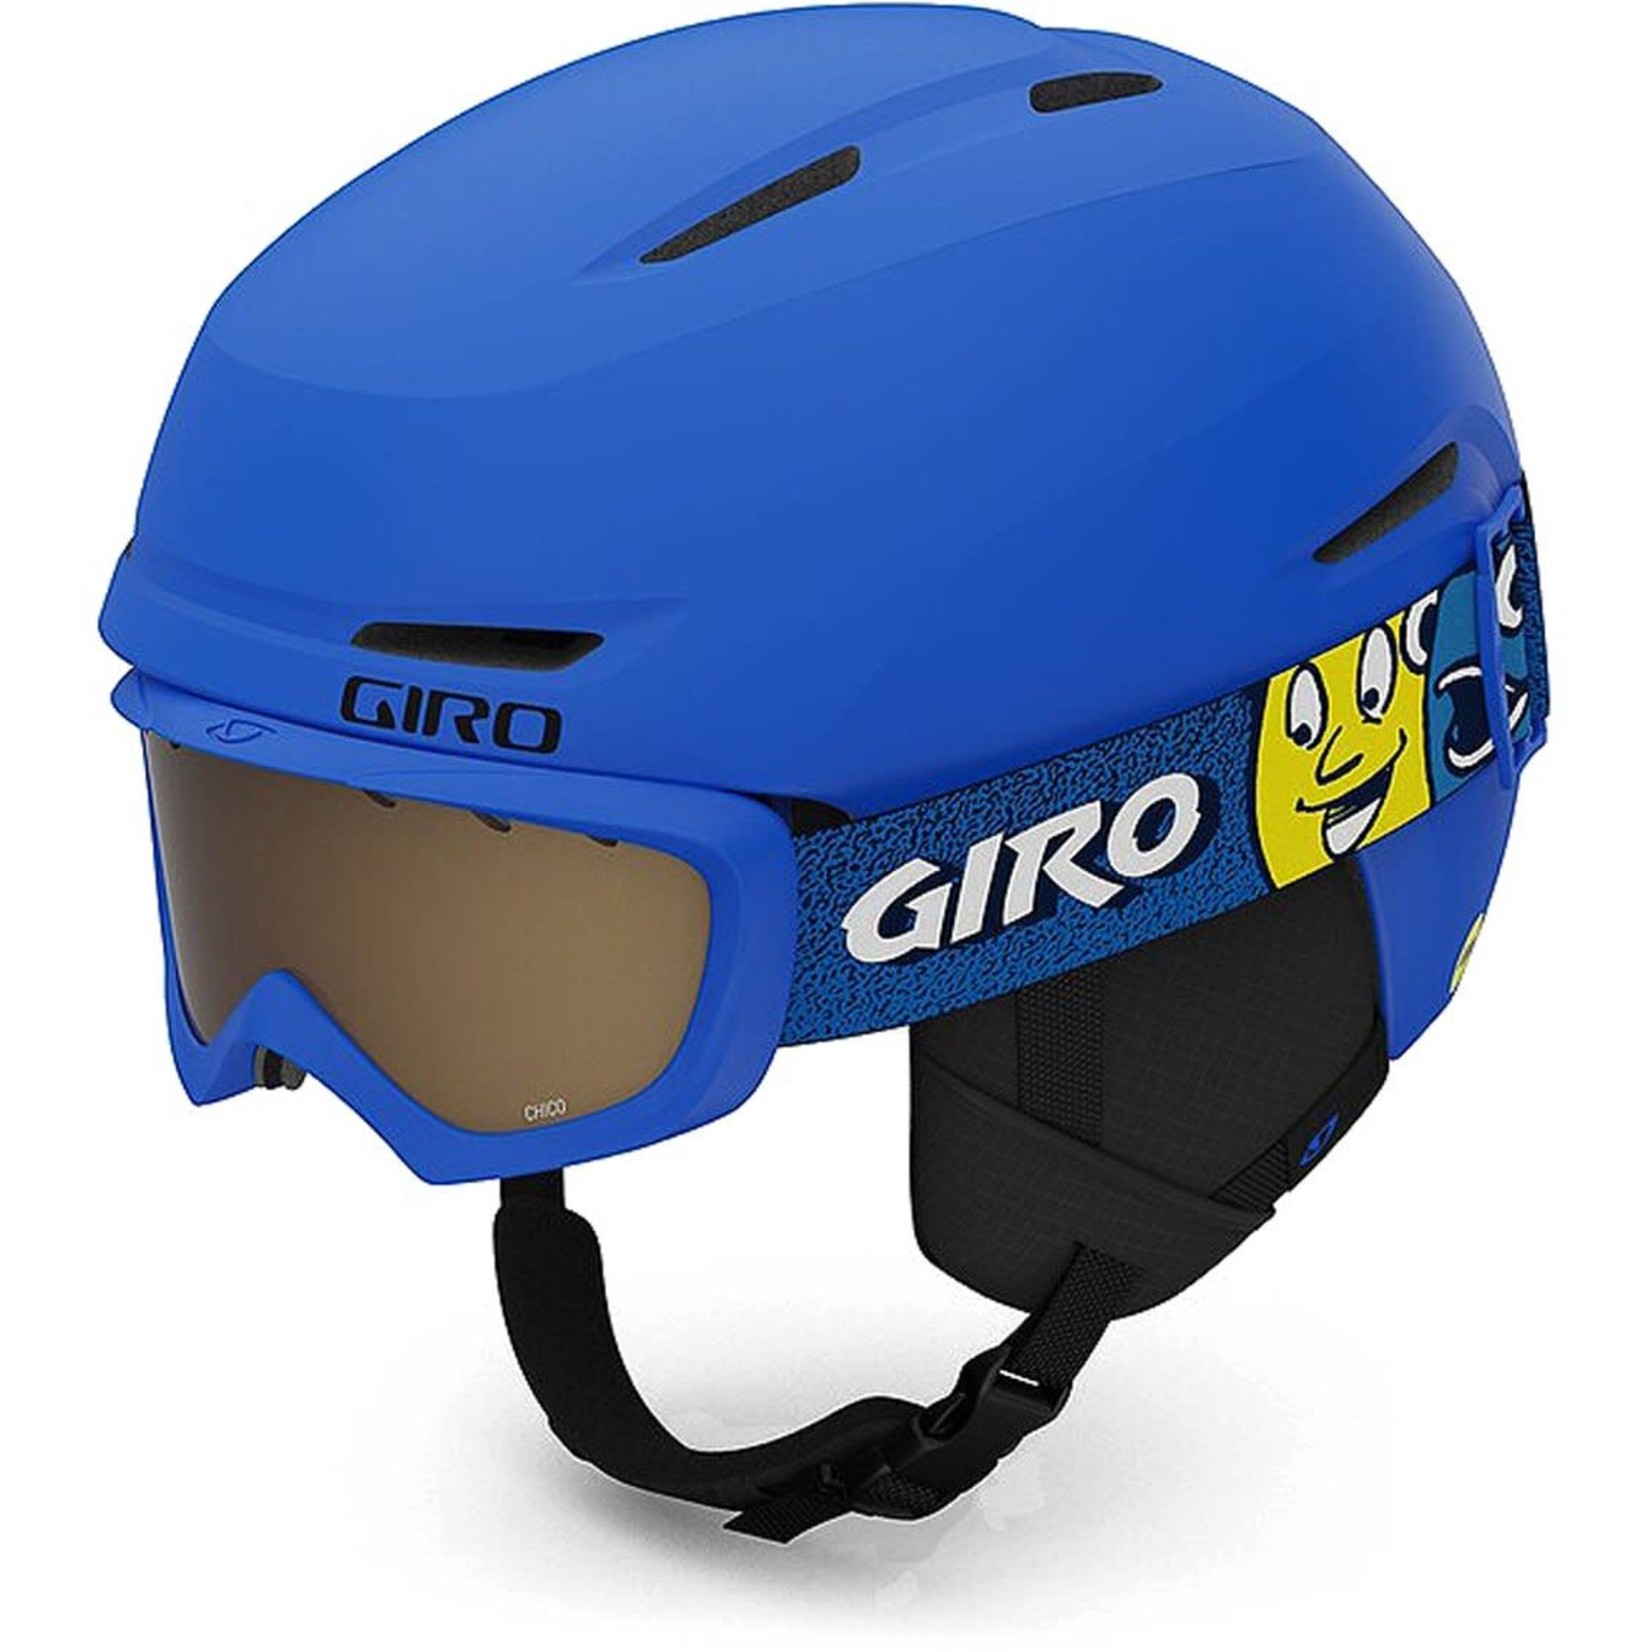 GIRO GIRO Spur Cp casque de ski enfant